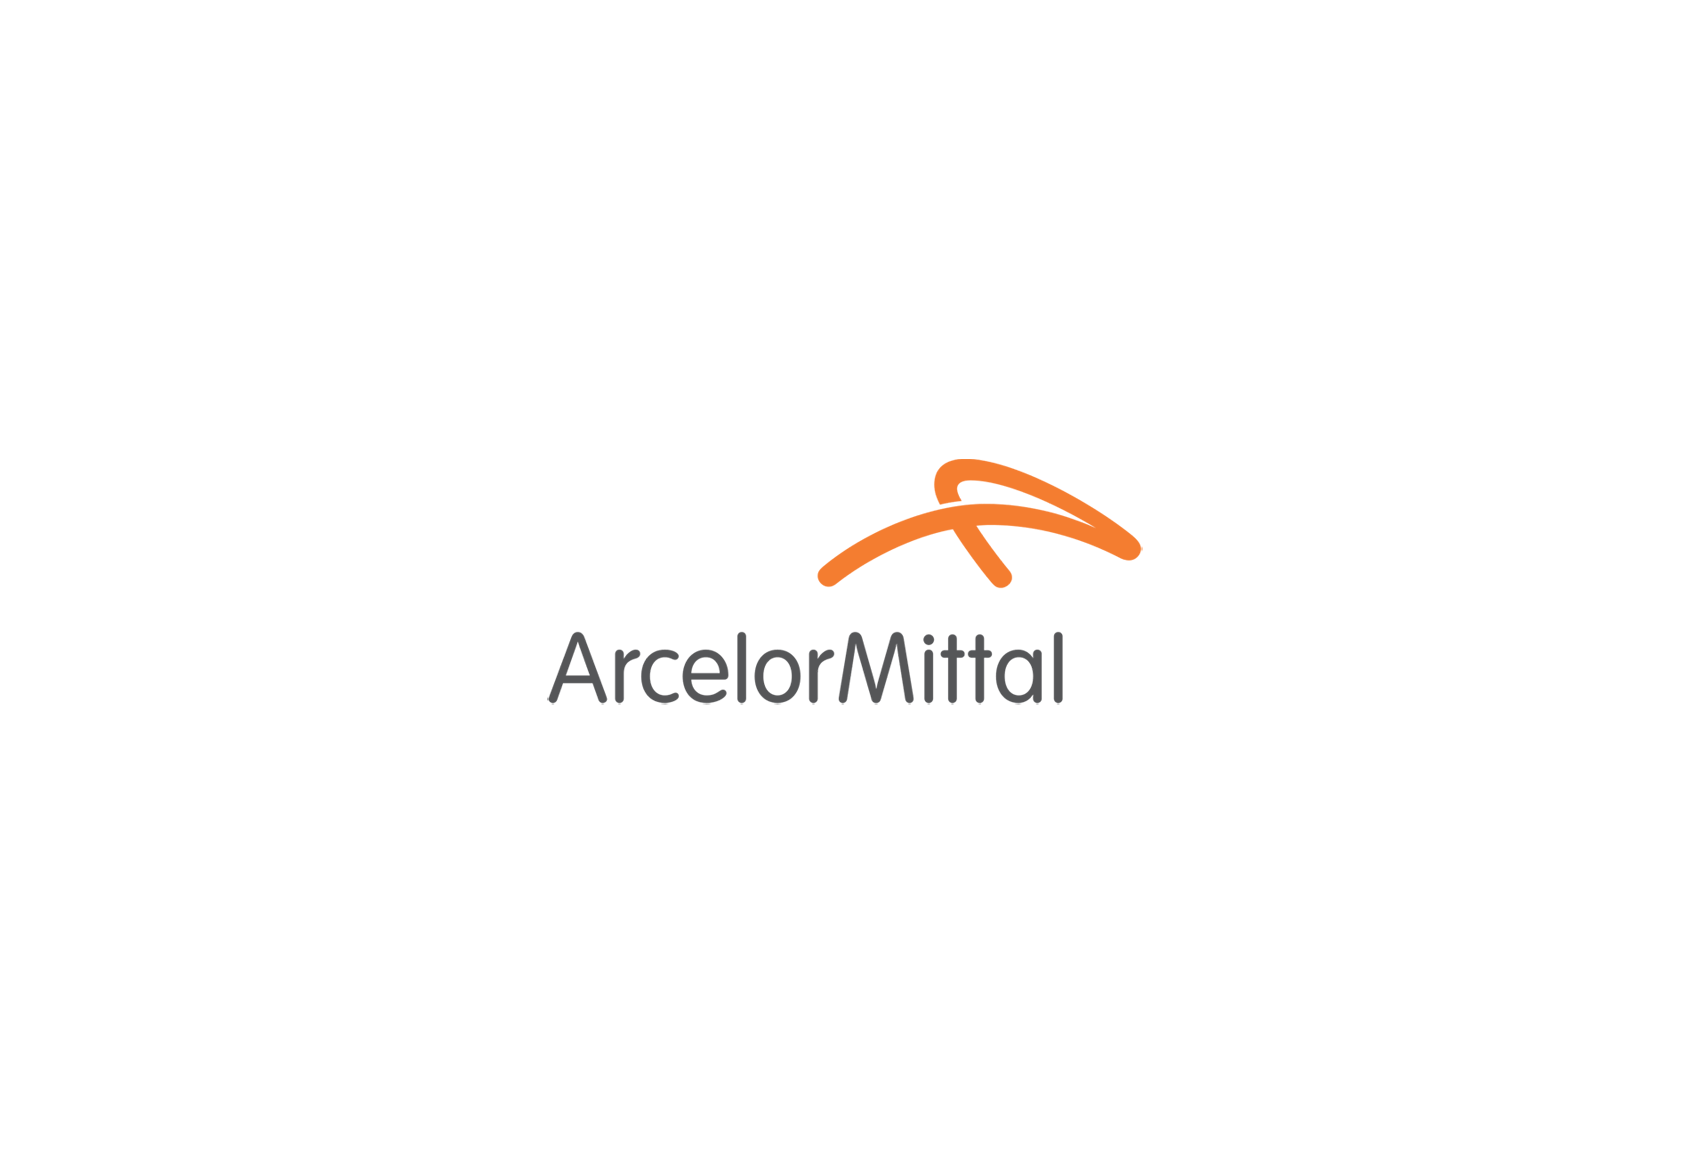 ArcelorMittal Logo - ArcelorMittal logo | Dwglogo